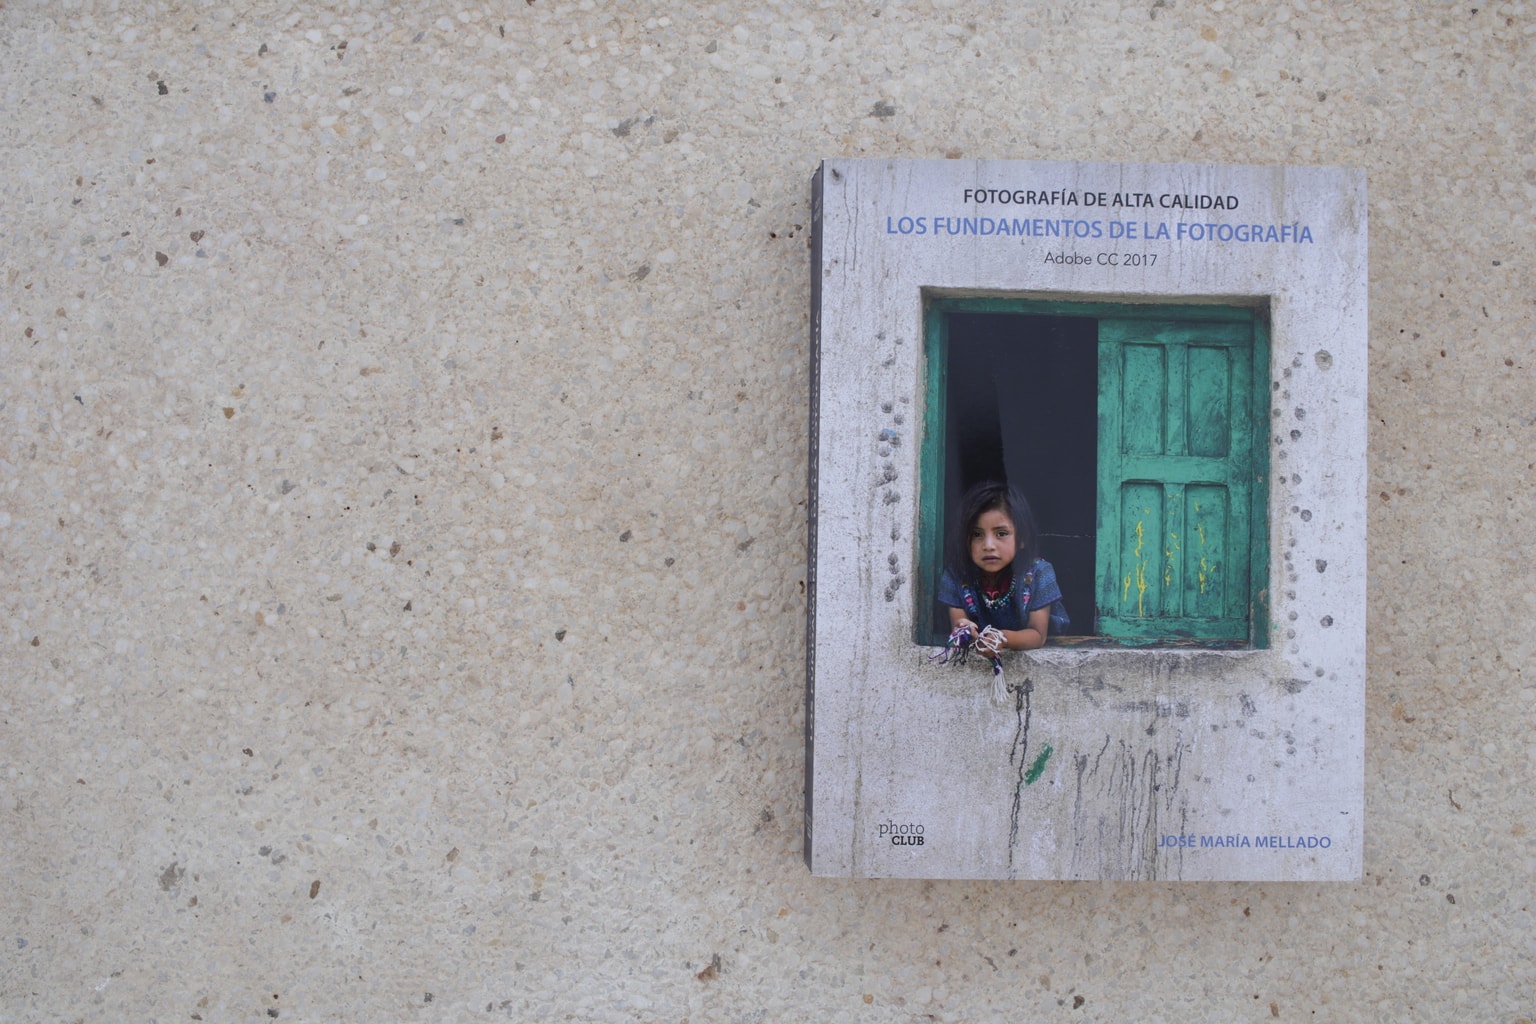 LITERARY RECOMMENDATION: THE FUNDAMENTALS OF PHOTOGRAPHY (JOSE MARÍA MELLADO)